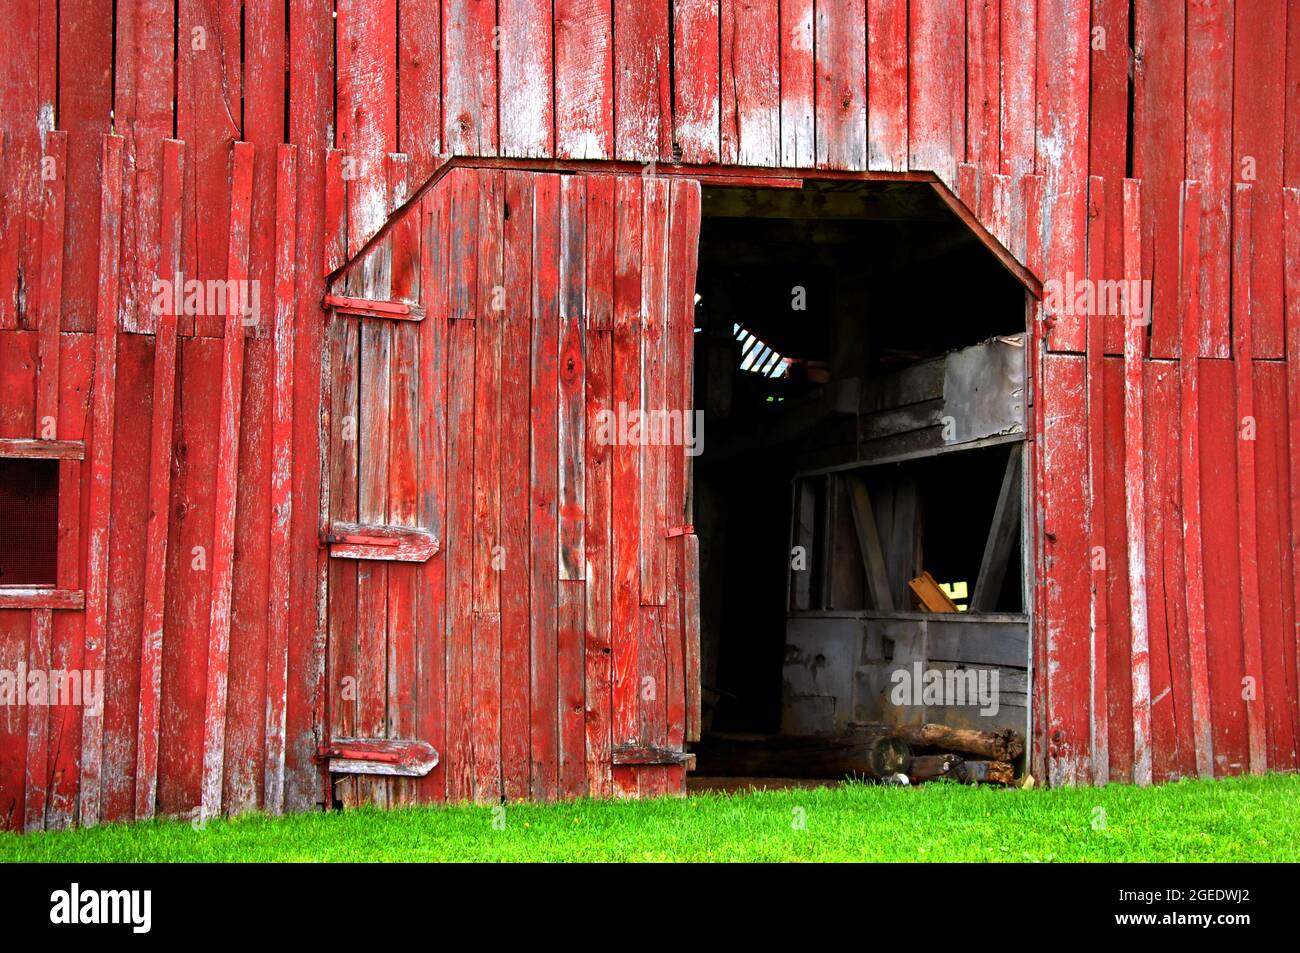 La grange en bois rouge est défraîchi et ancienne. Une porte est ouverte et l'autre est cassée. L'herbe verte vif couvre la base de la grange. Banque D'Images